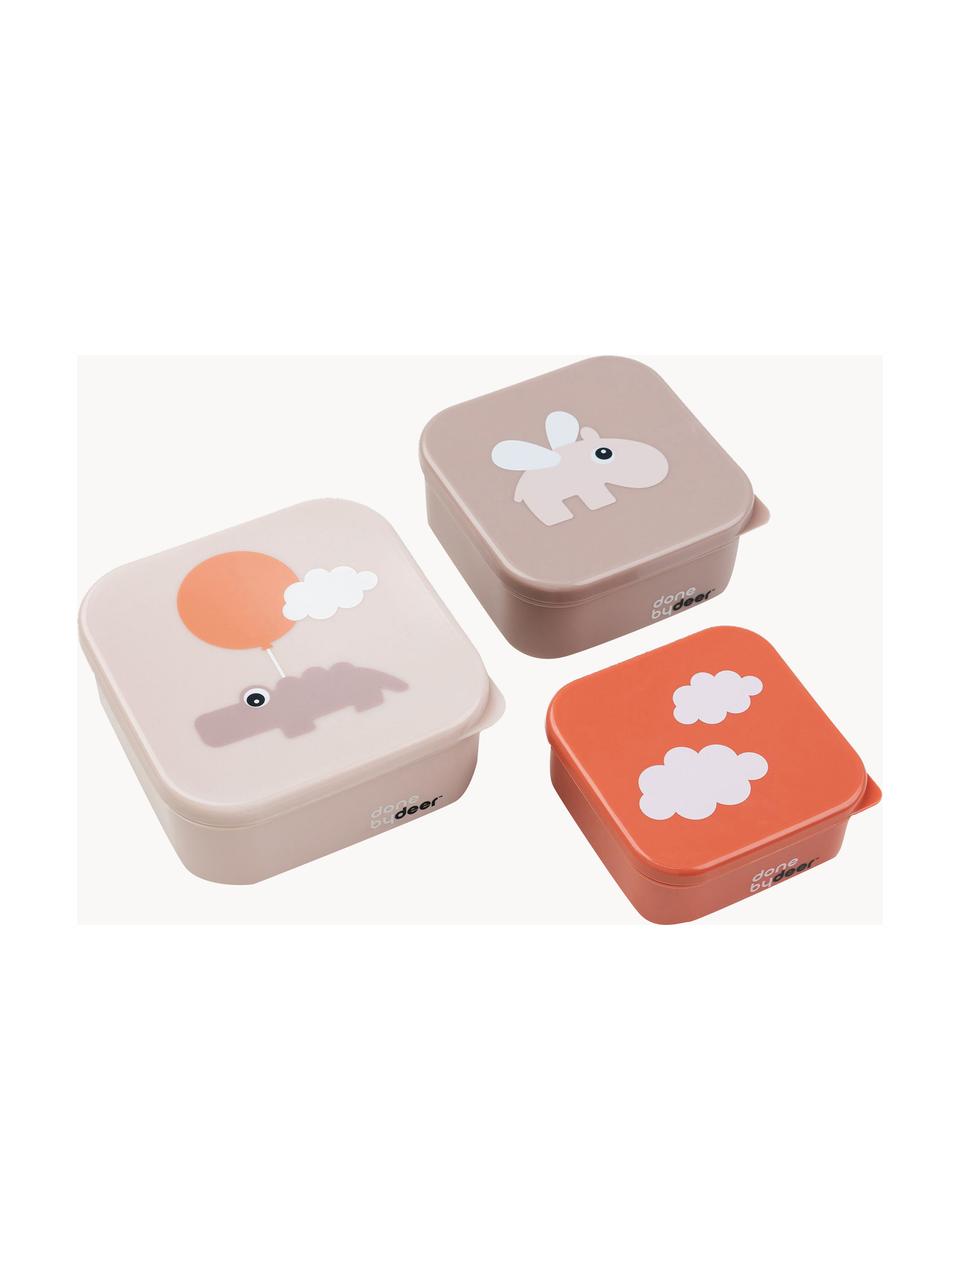 Kinderlunchbox Happy Clouds, set van 3, Kunststof, Beige, abrikooskleurig, koraalrood, Set met verschillende formaten